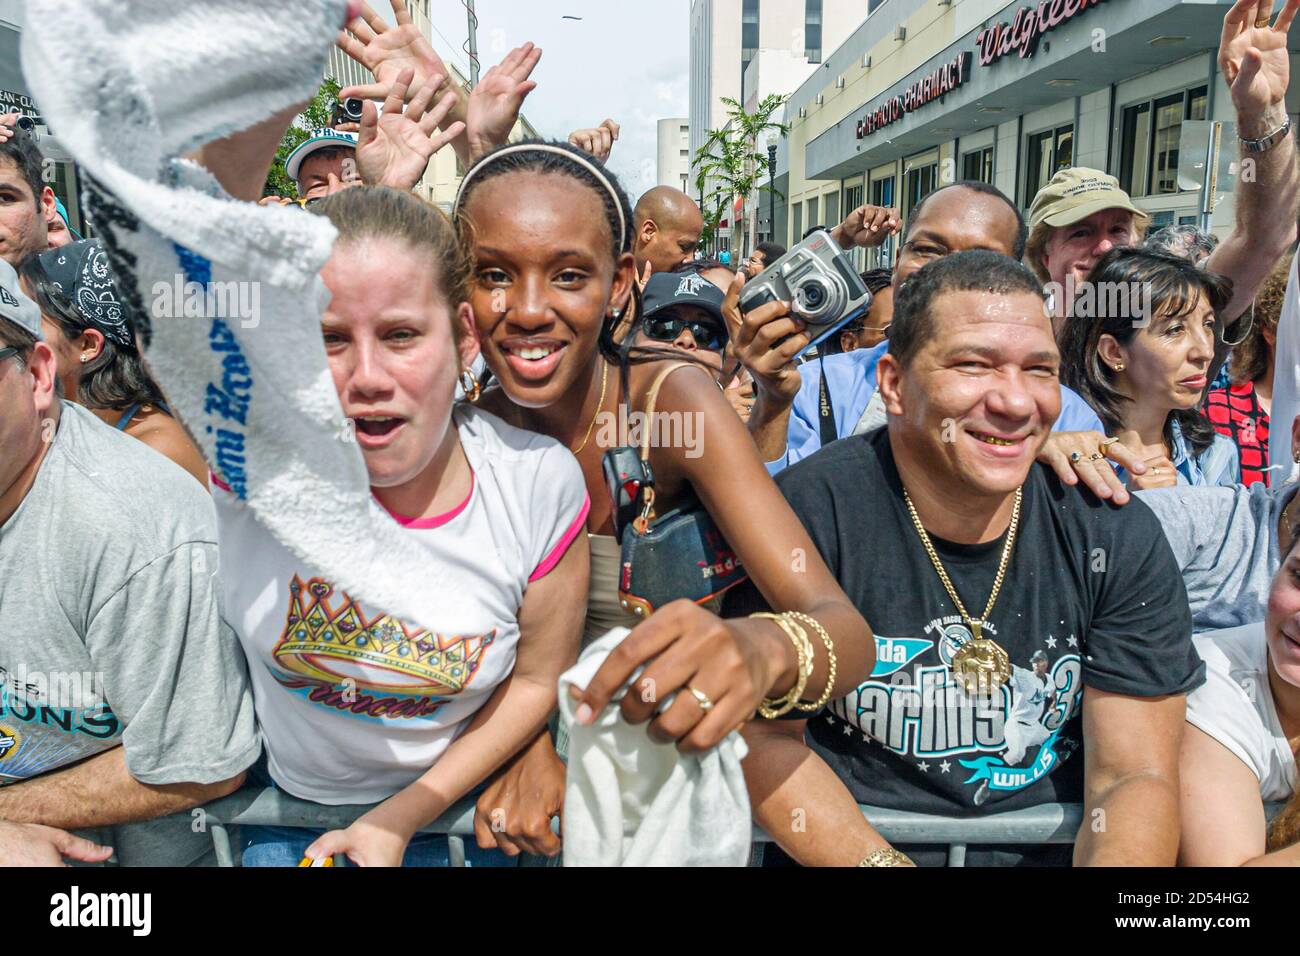 Miami Florida,Flagler Street,Marlins Major League Baseball équipe gagnante de la série mondiale, les fans célèbrent le défilé,Black African Hispanic girl girl Banque D'Images